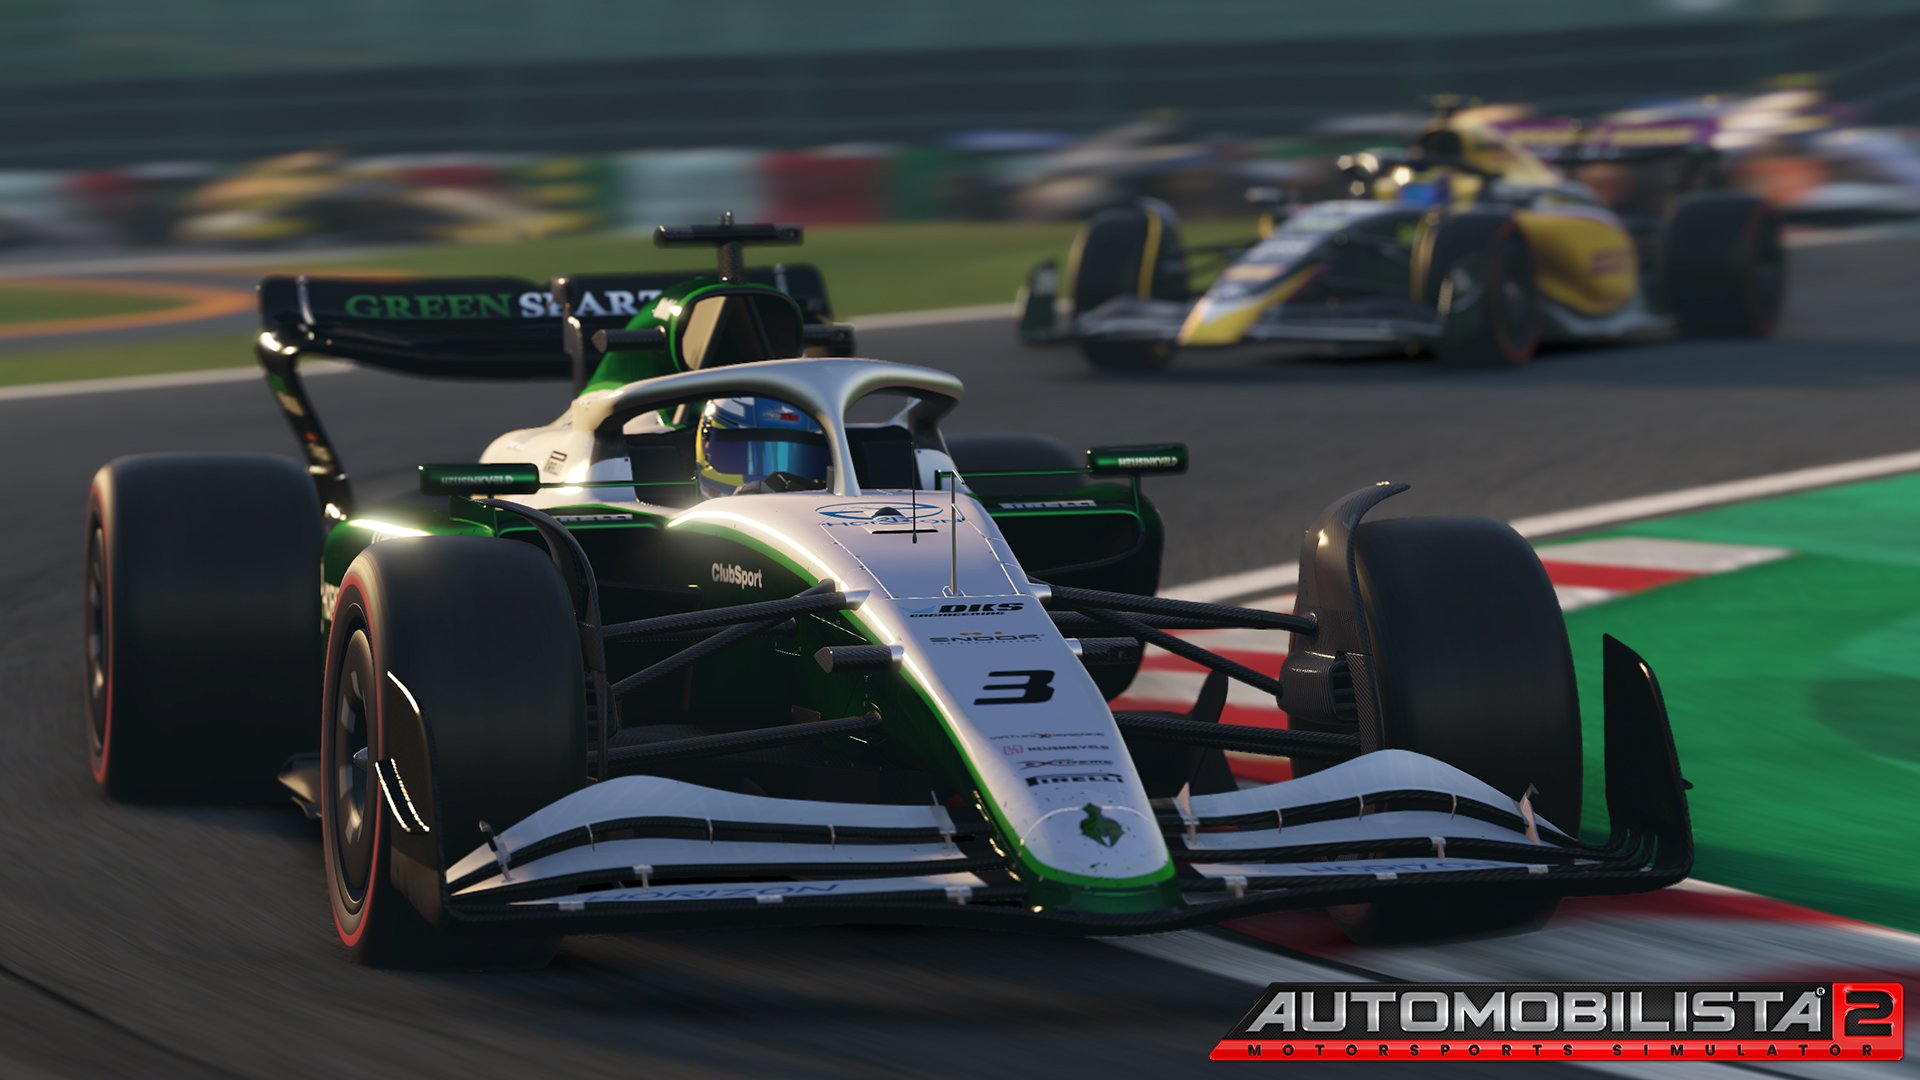 More information about "Automobilista 2: nuovo update disponibile con F-Ultimate Gen2 rinnovata"